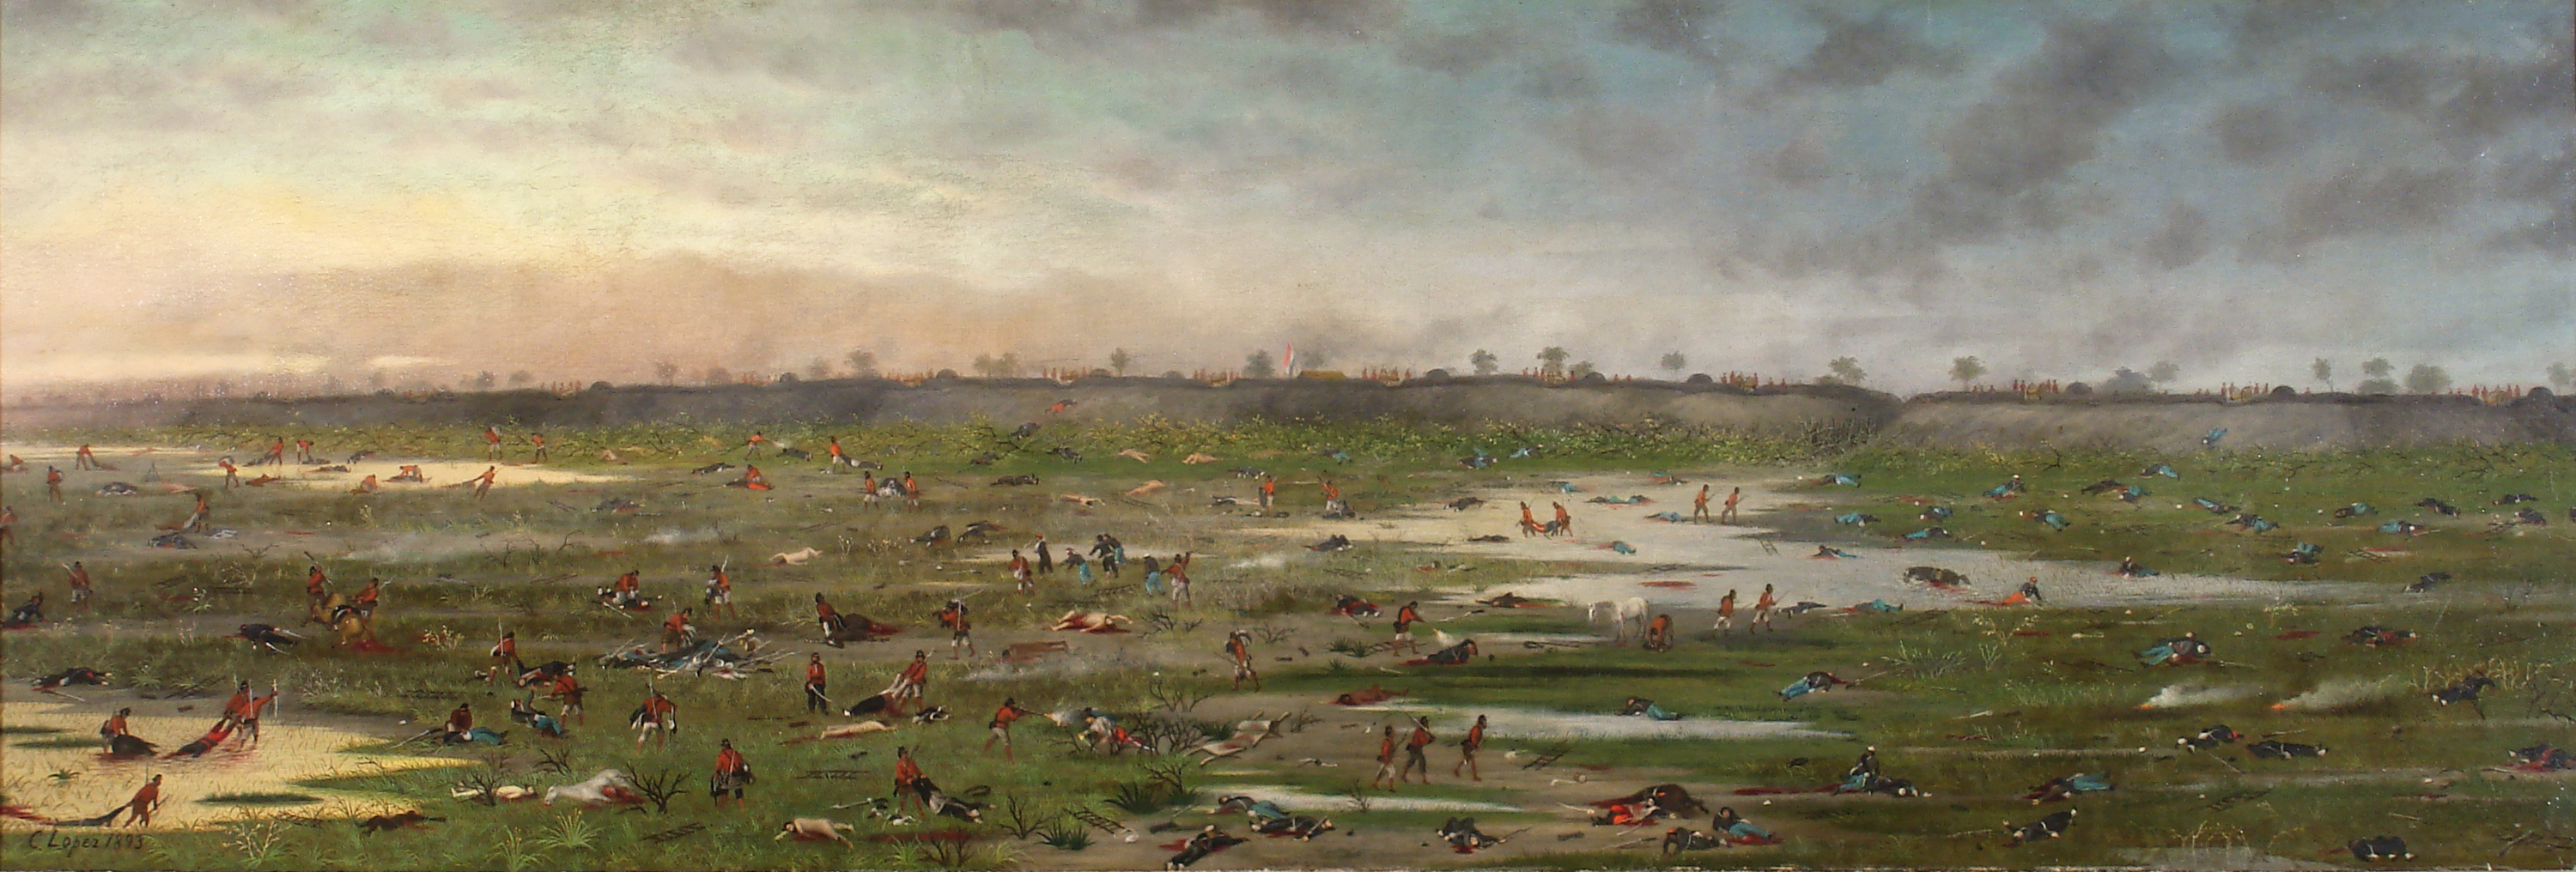 Curupaytí Savaşı'ndan Sonra by Cándido López - 1893 - 50,6 x 149,5 cm 